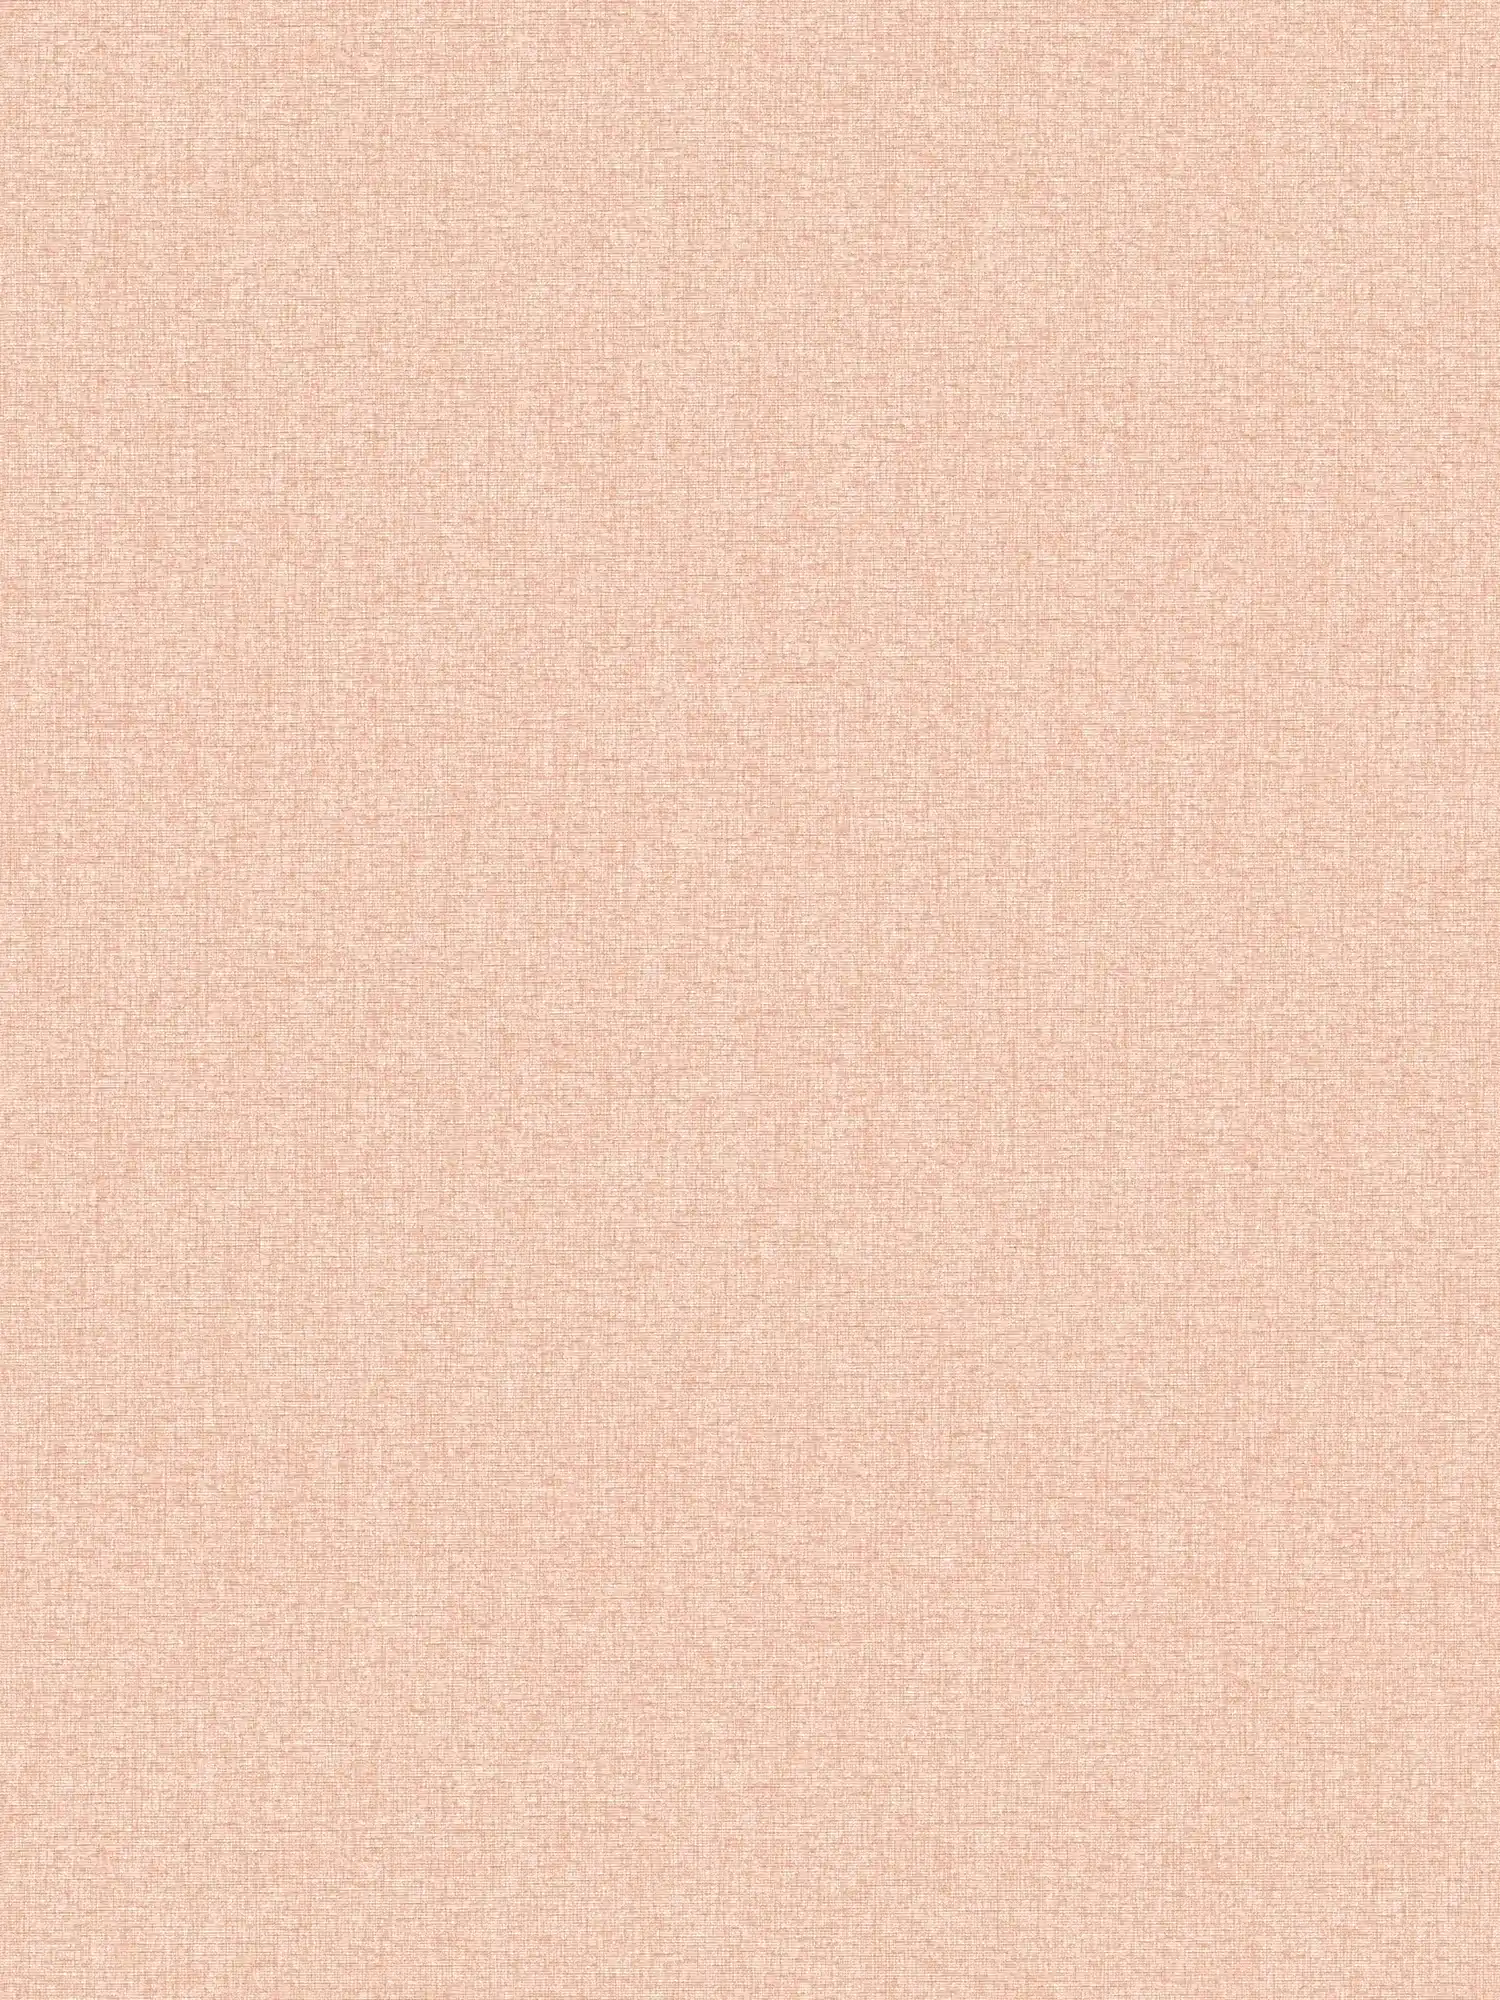 Carta da parati non tessuta con disegno strutturato tinta unita, opaco - arancione, rosa
